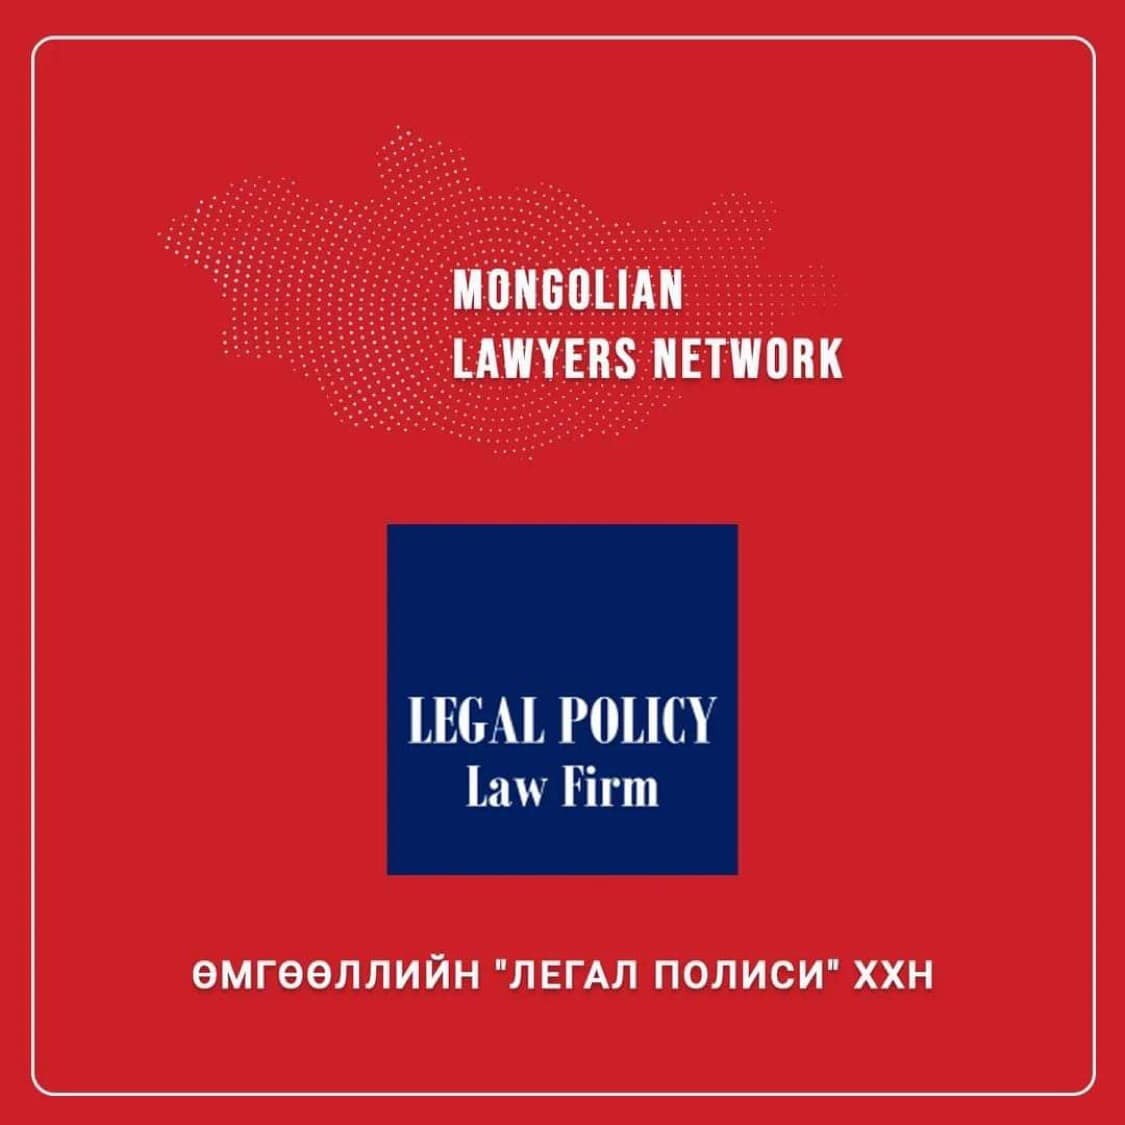 “Mongolian Lawyers Network”-д Өмгөөллийн “Легал Полиси” ХХН оролцлоо.